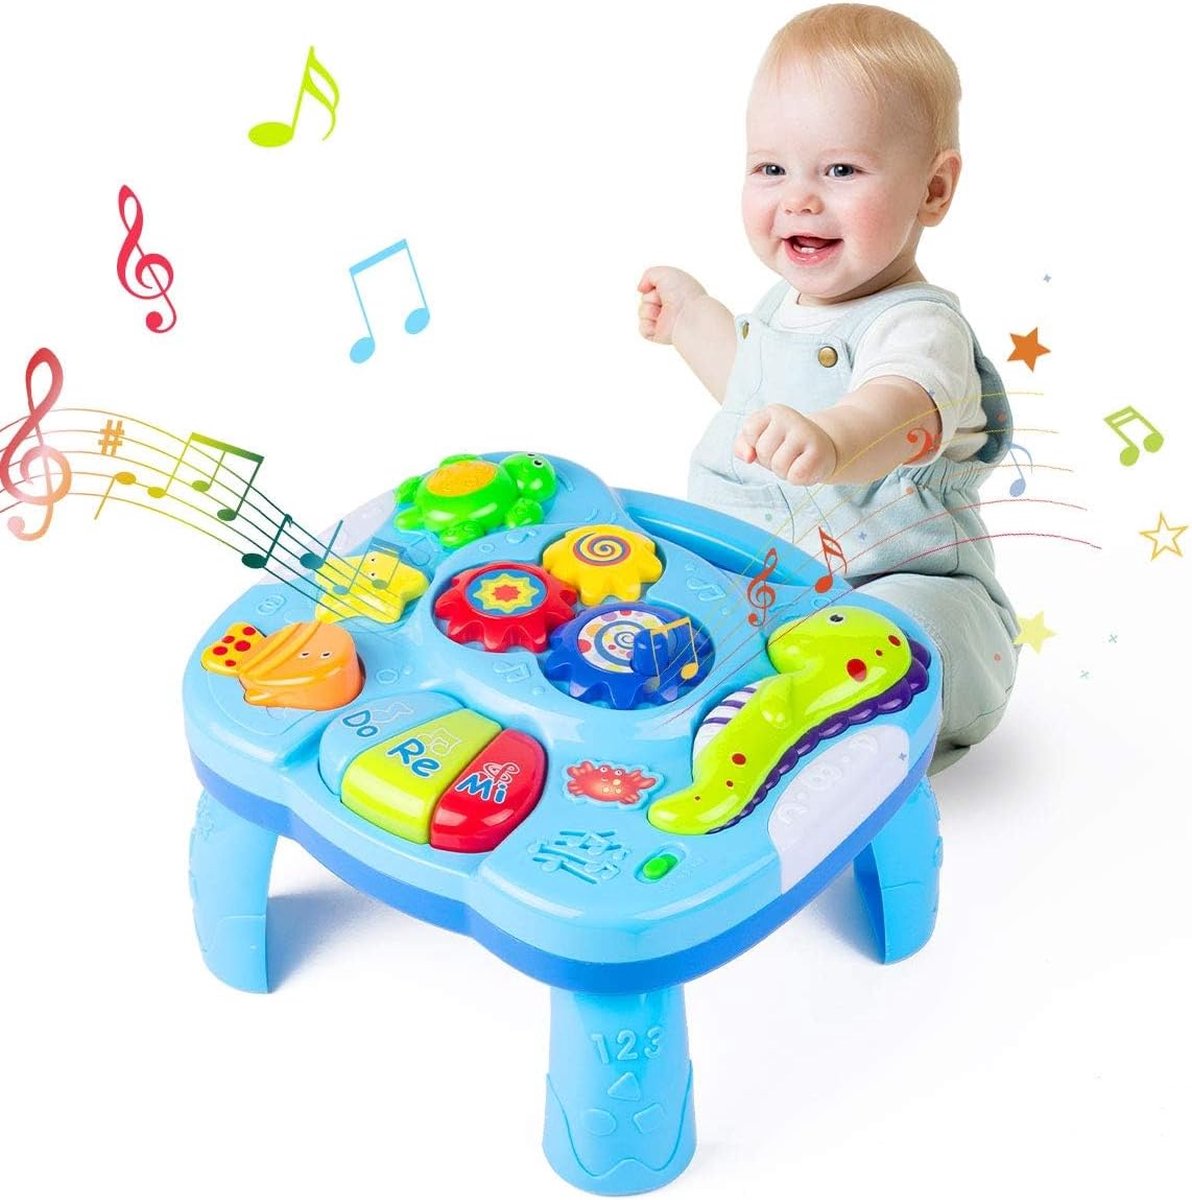 Jouets musicaux, bébés filles Montessori, speelgoed 0, 3, 6, 12